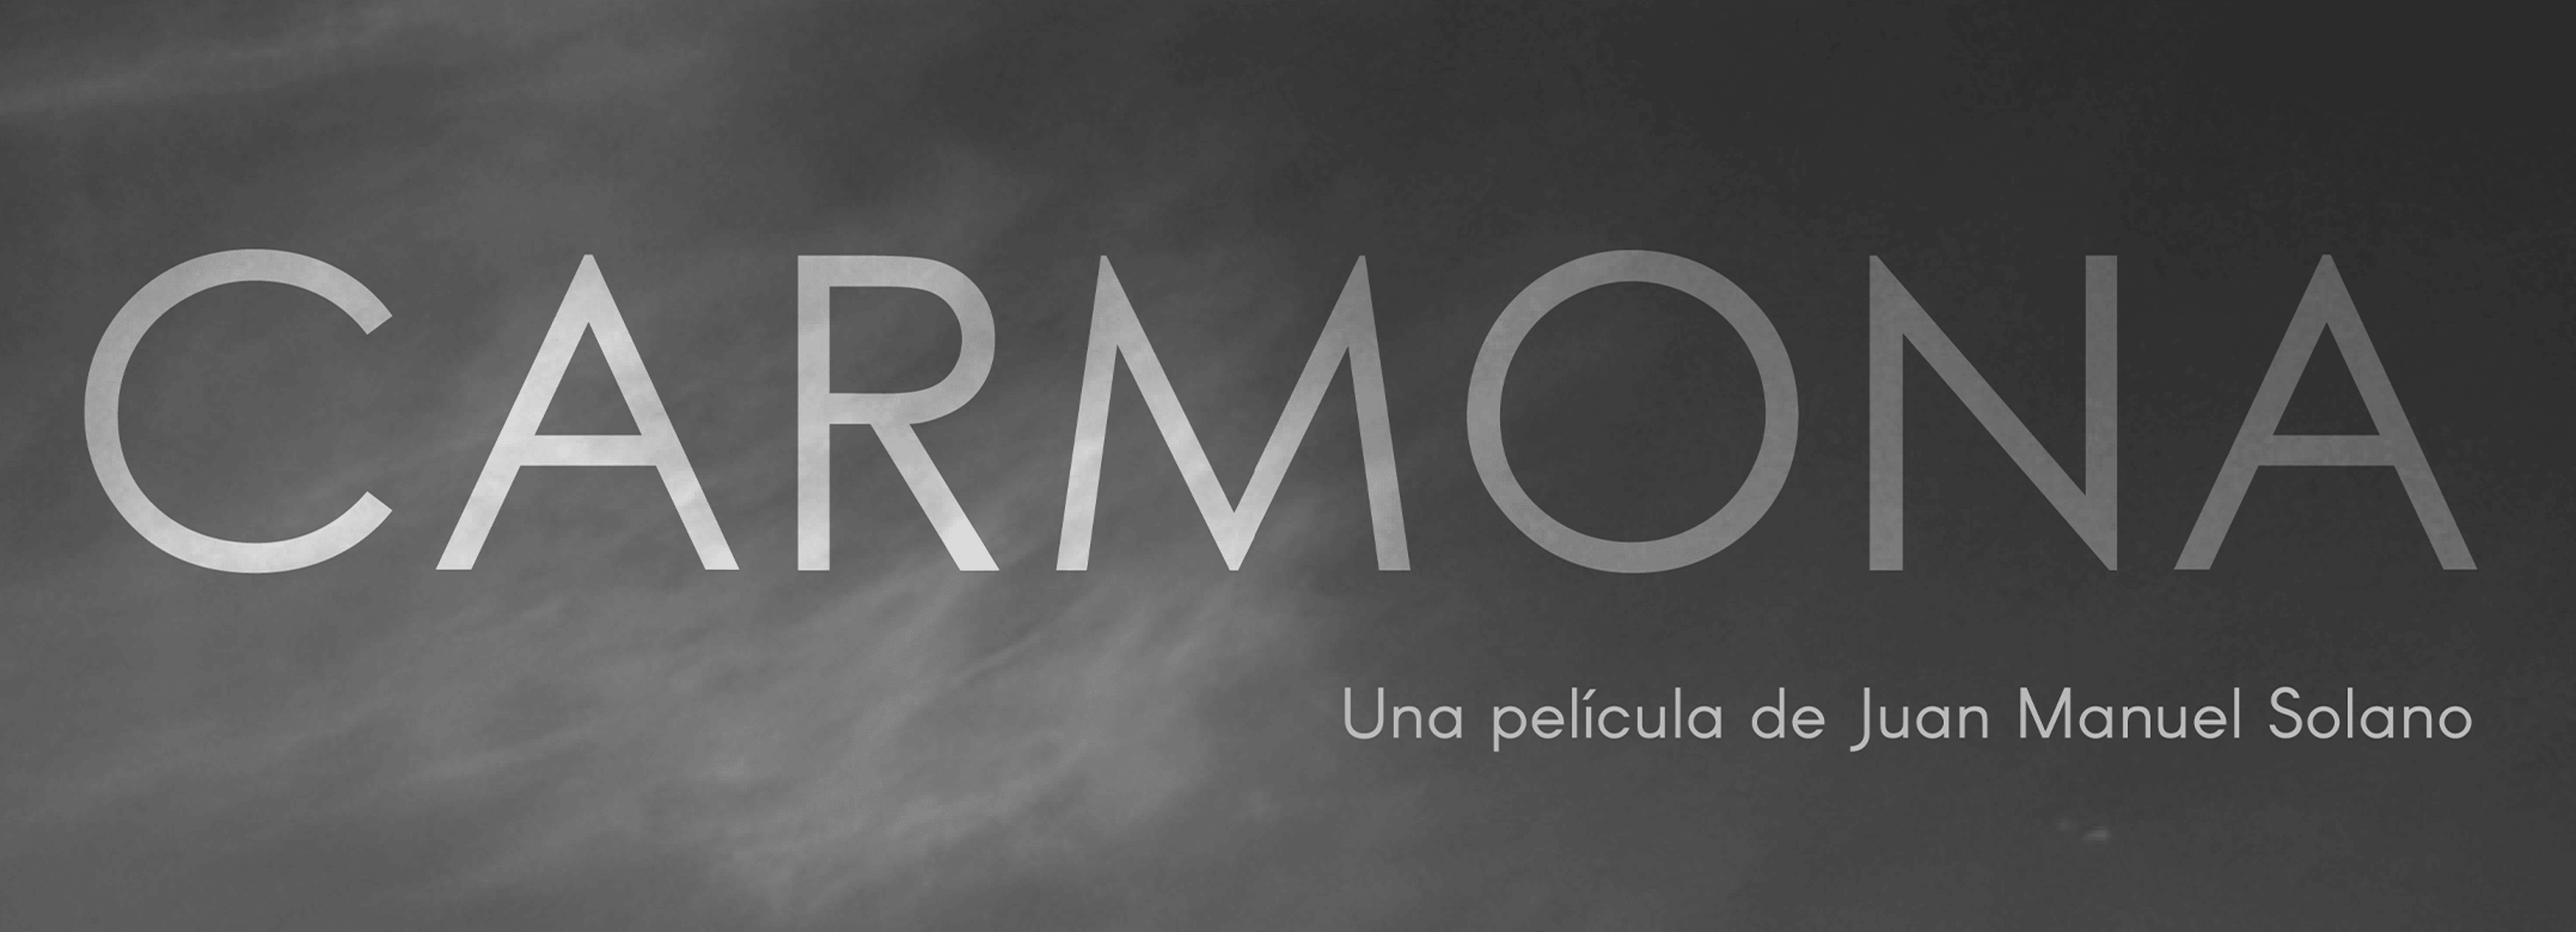 Cartel de título para una película, presentando la palabra "CARMONA" en letras blancas grandes contra un fondo en escala de grises nublado, con un subtítulo en español.